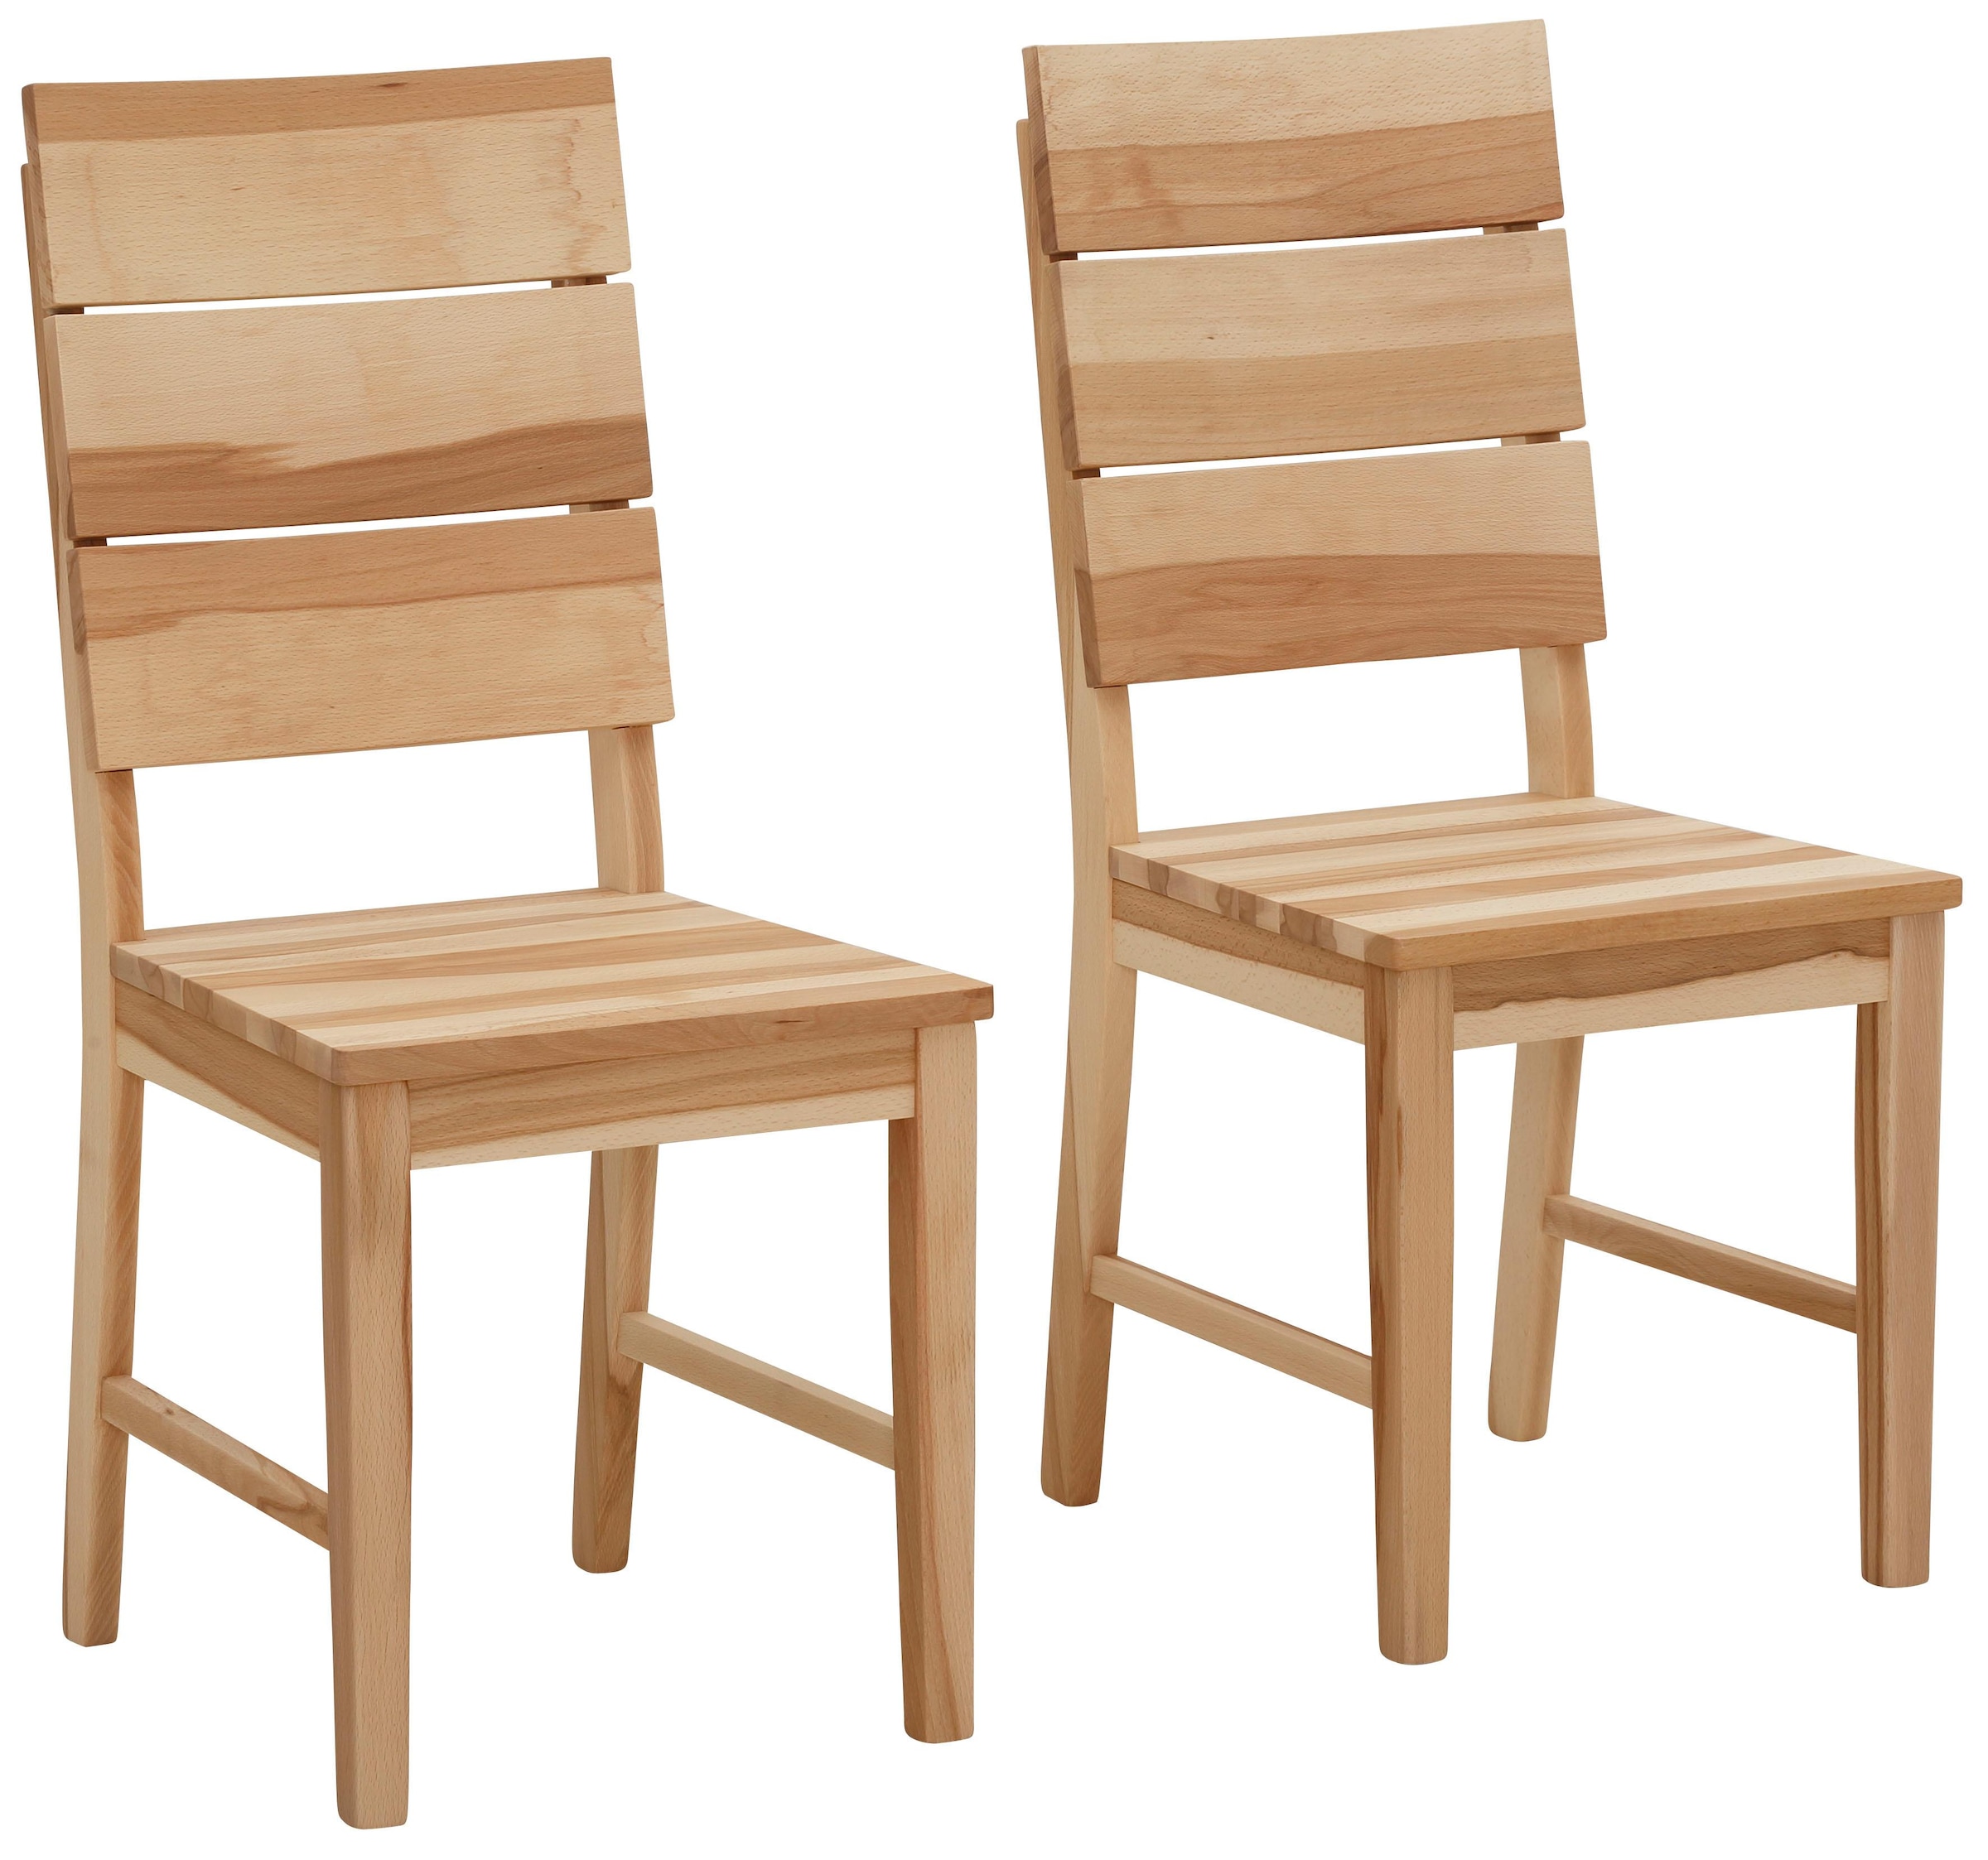 4-Fuss-Stühle kaufen Ackermann bei online